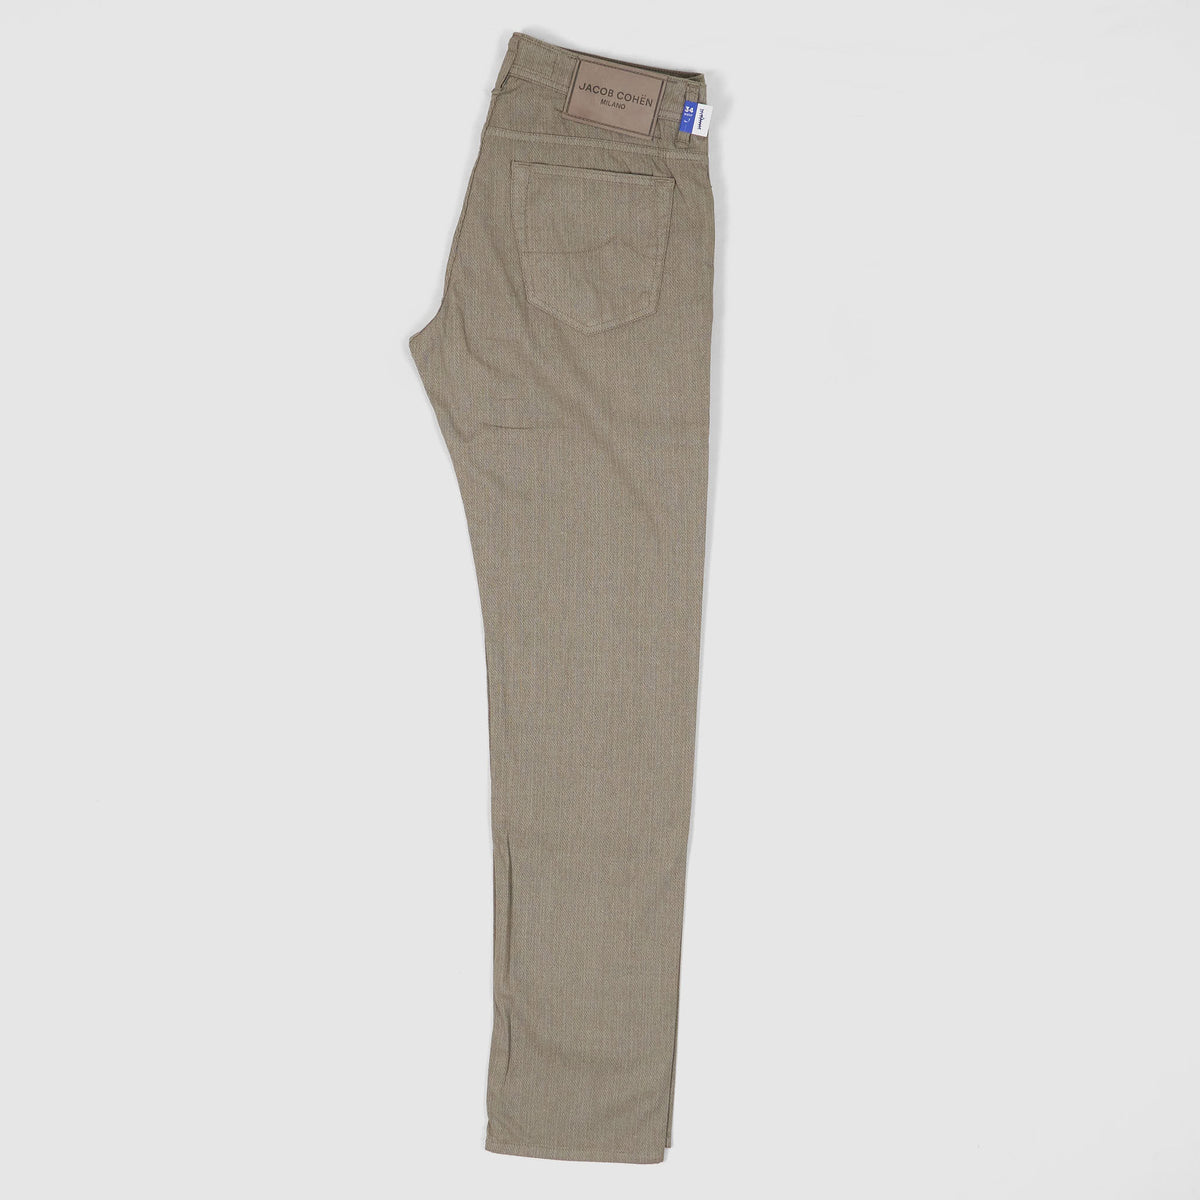 Jacob Cohen 5 Pocket Slim Fit Jeans